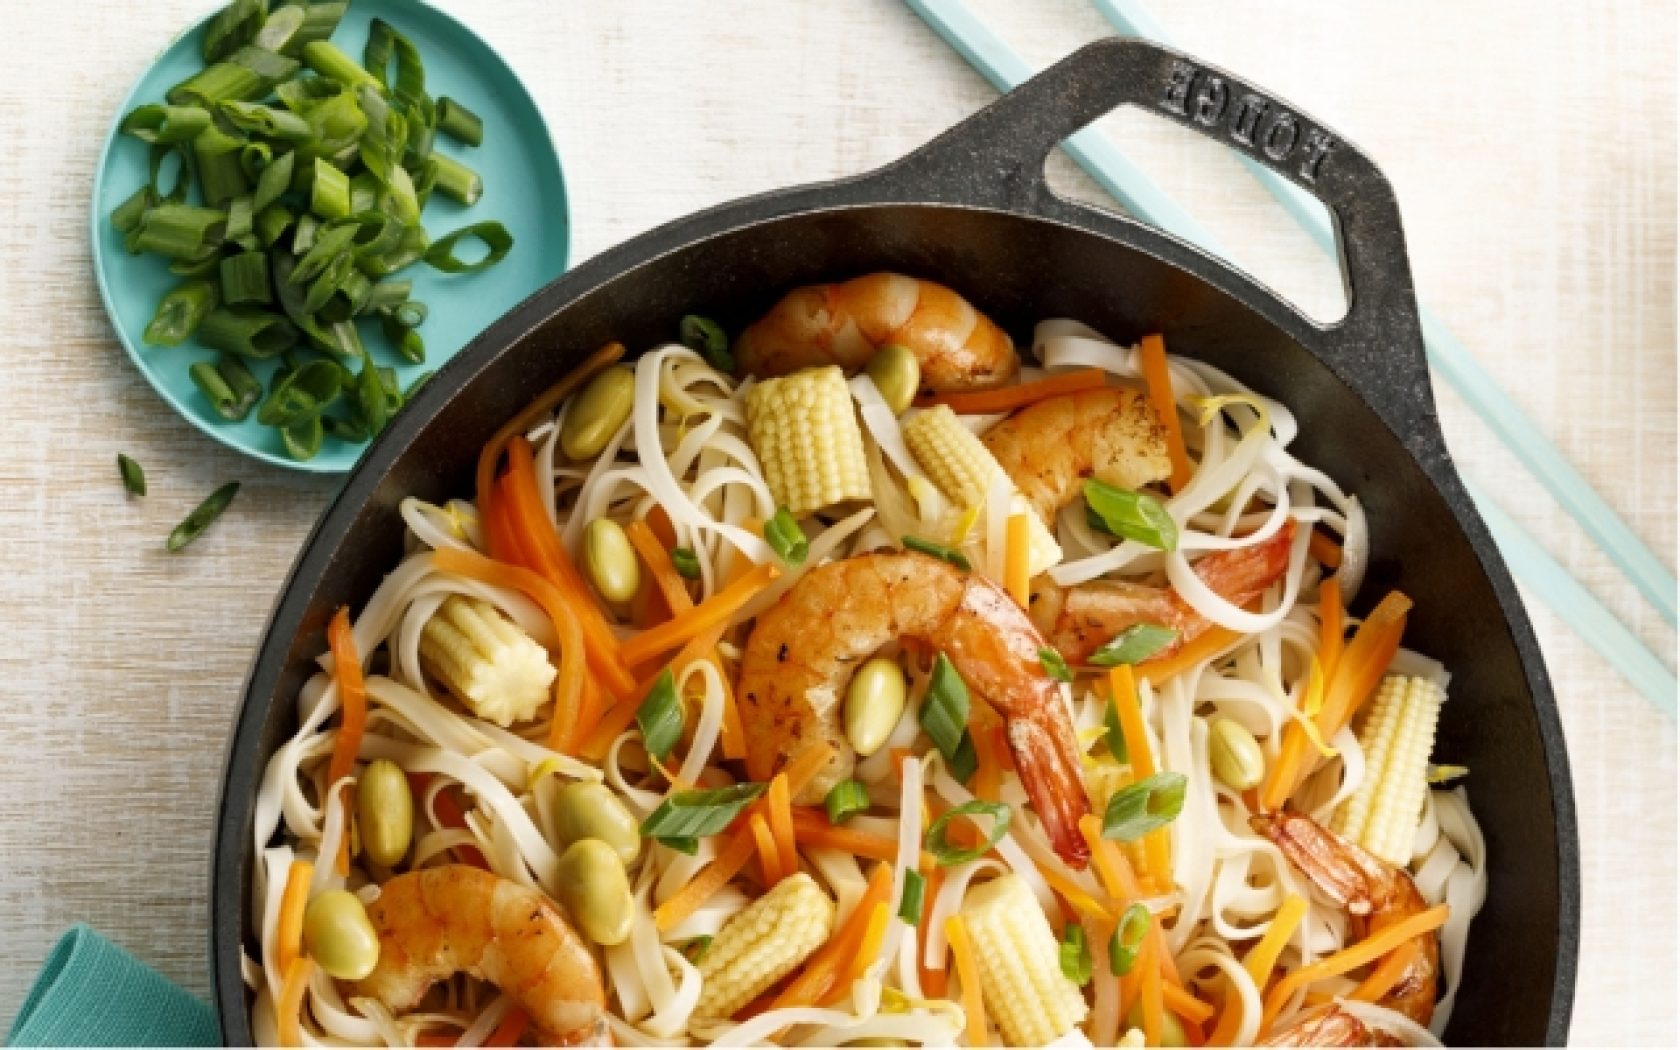 Shrimp chop suey, noodles and Asian vegetables